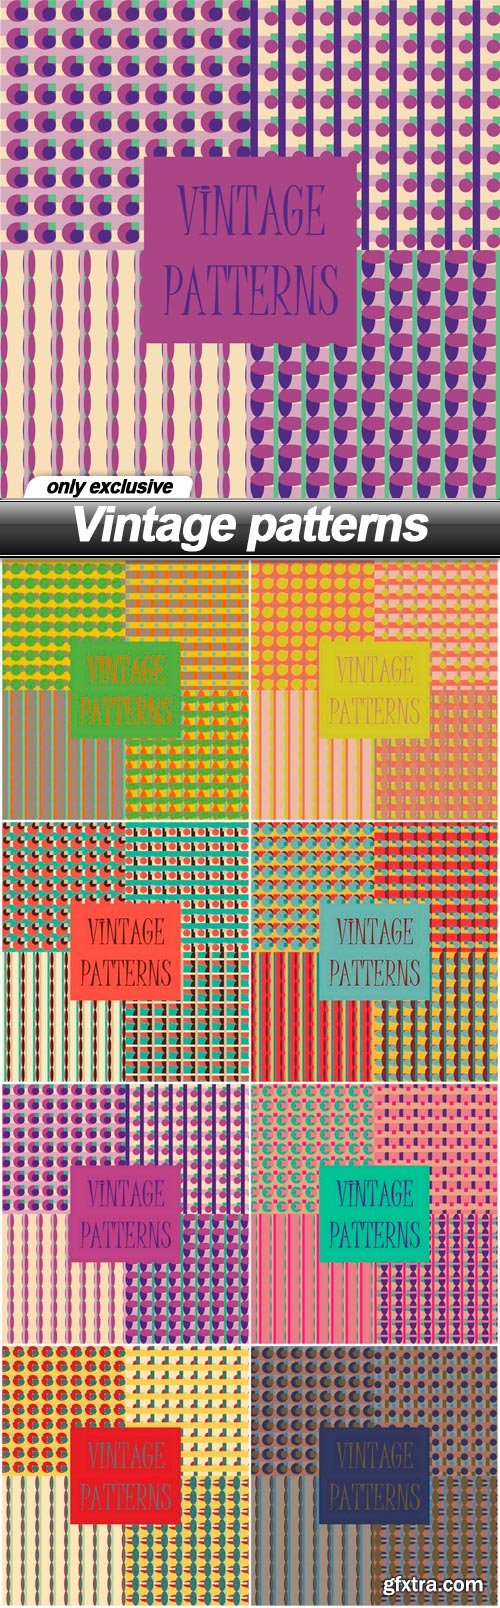 Vintage patterns - 8 EPS